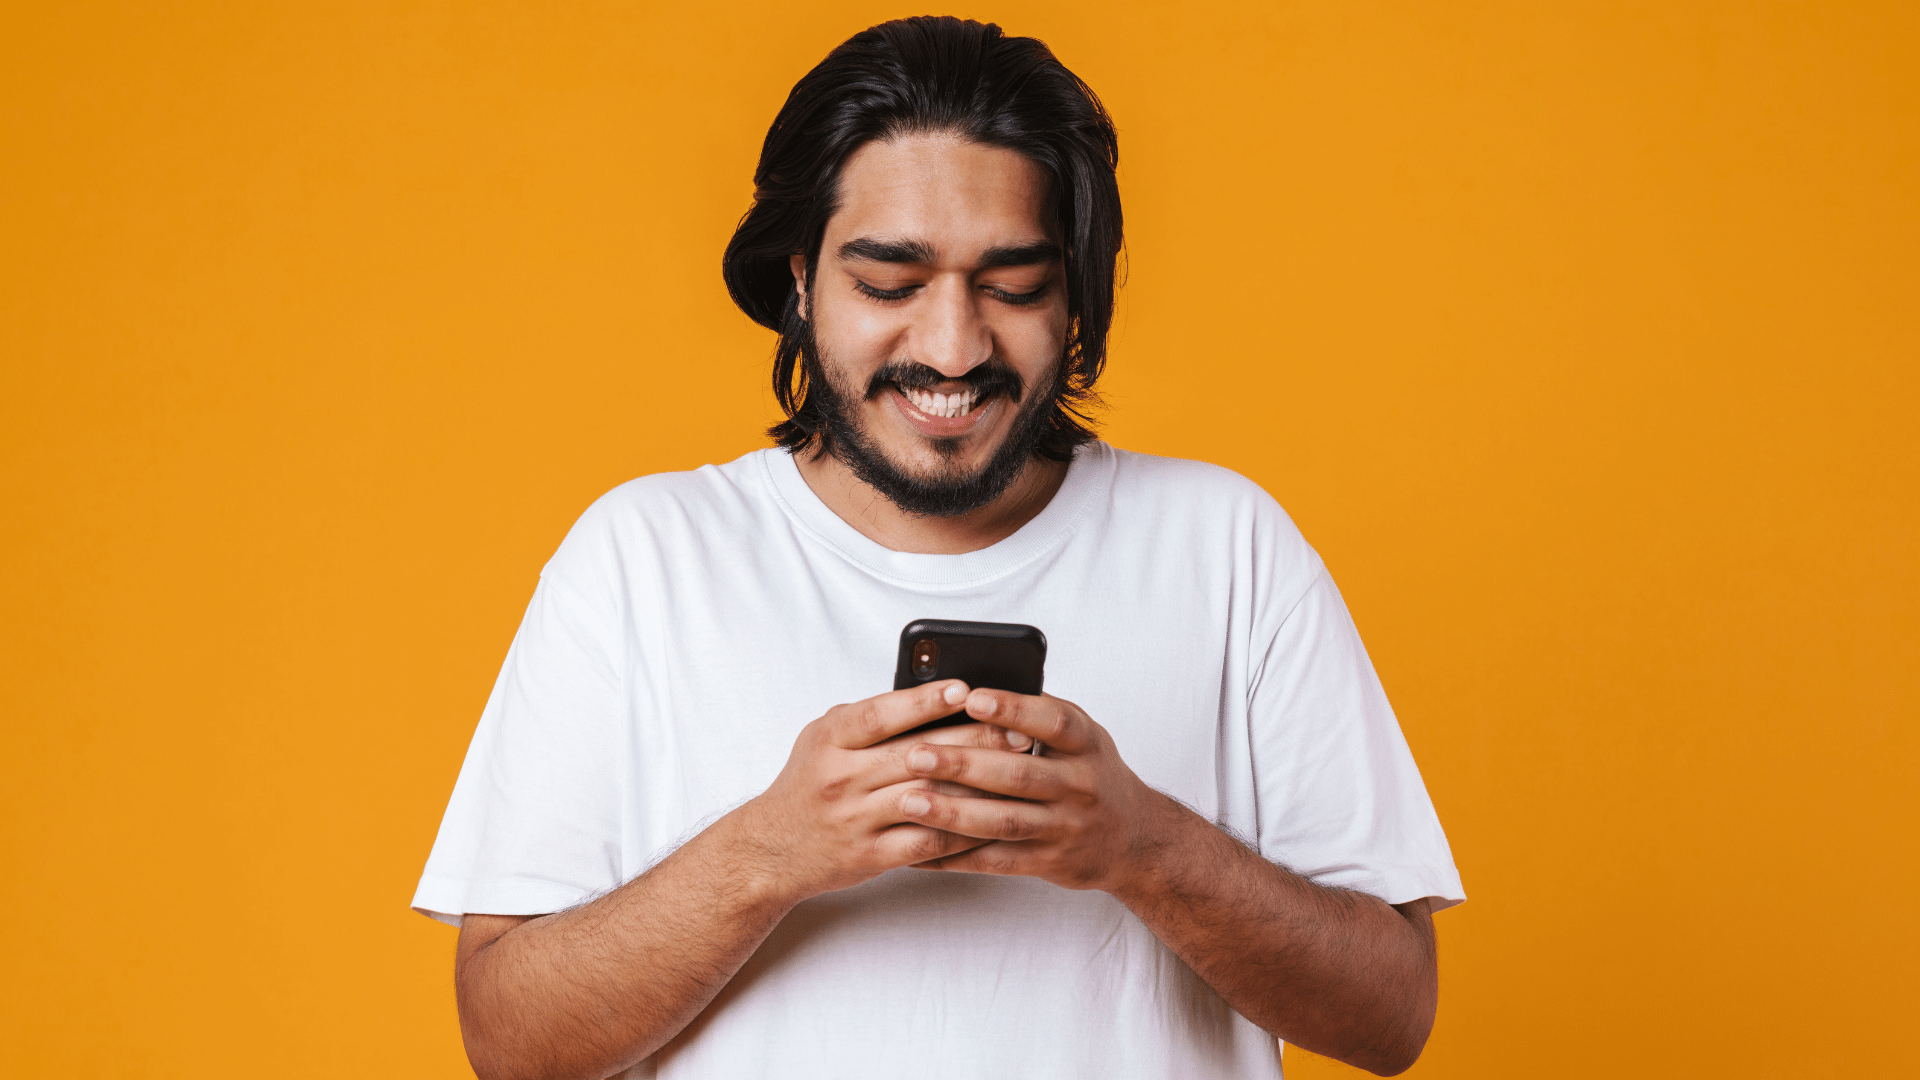 Foto de um homem sorrindo em um fundo amarelo, olhando para o celular.